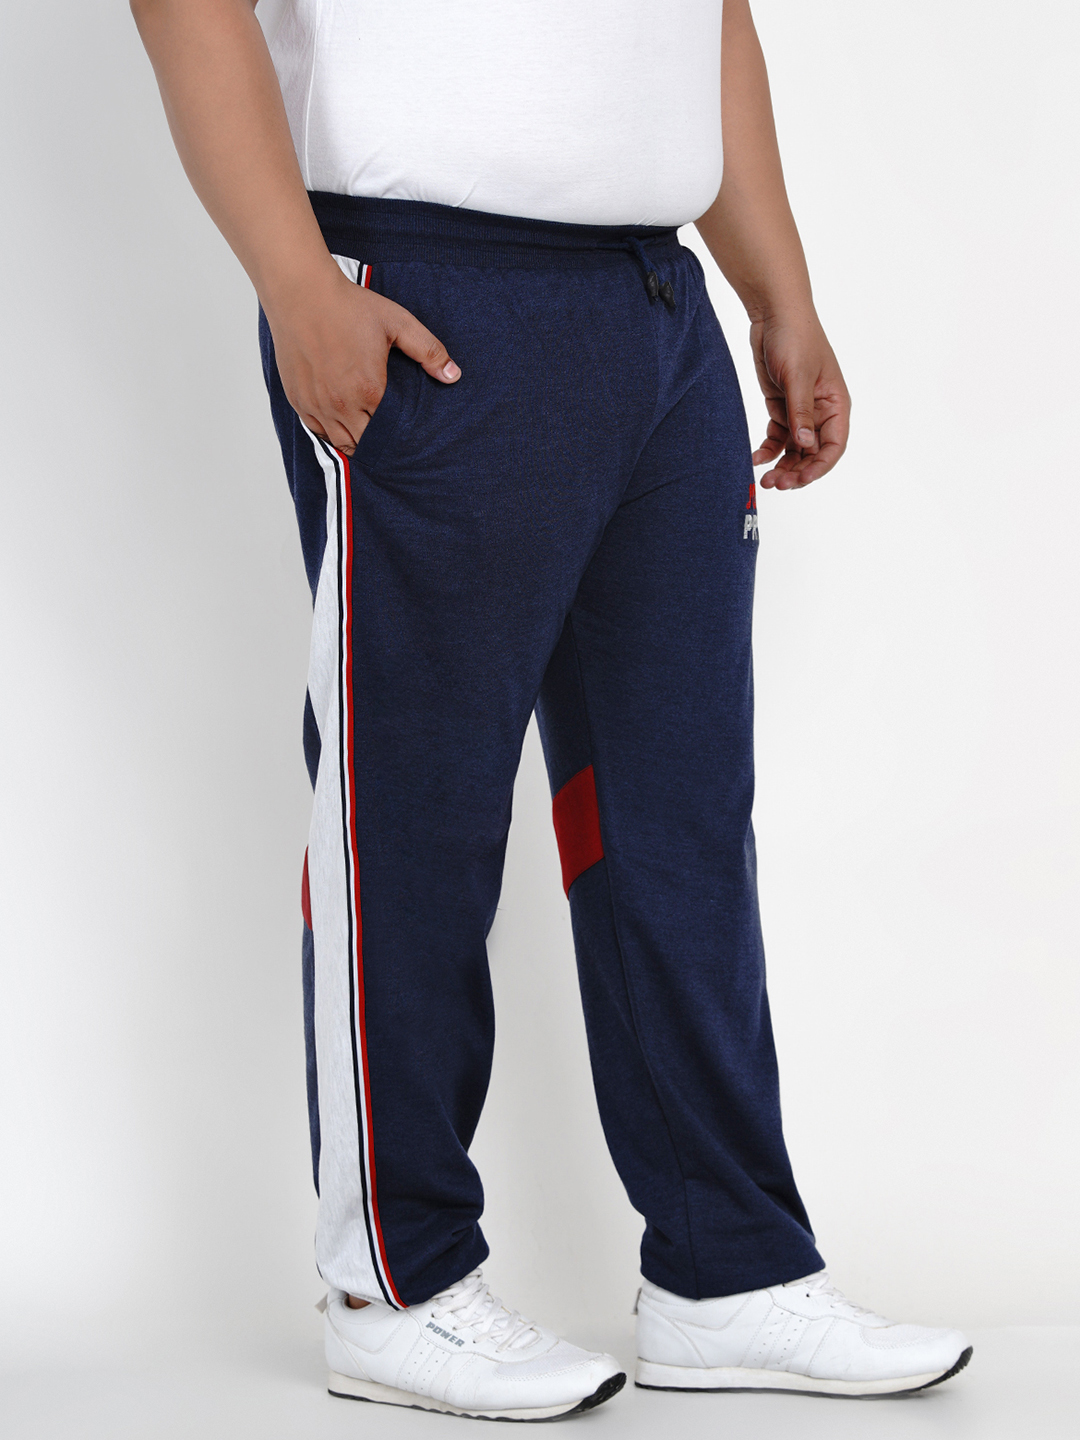 BEDEN Athletic Pants for Men Gym Men's Trousers Jogging Tight Sweatpants  Tight Sweatpants Men's Side Zipper Pants (Color : Army Green, Size : (Size)  L) : Amazon.com.au: Clothing, Shoes & Accessories